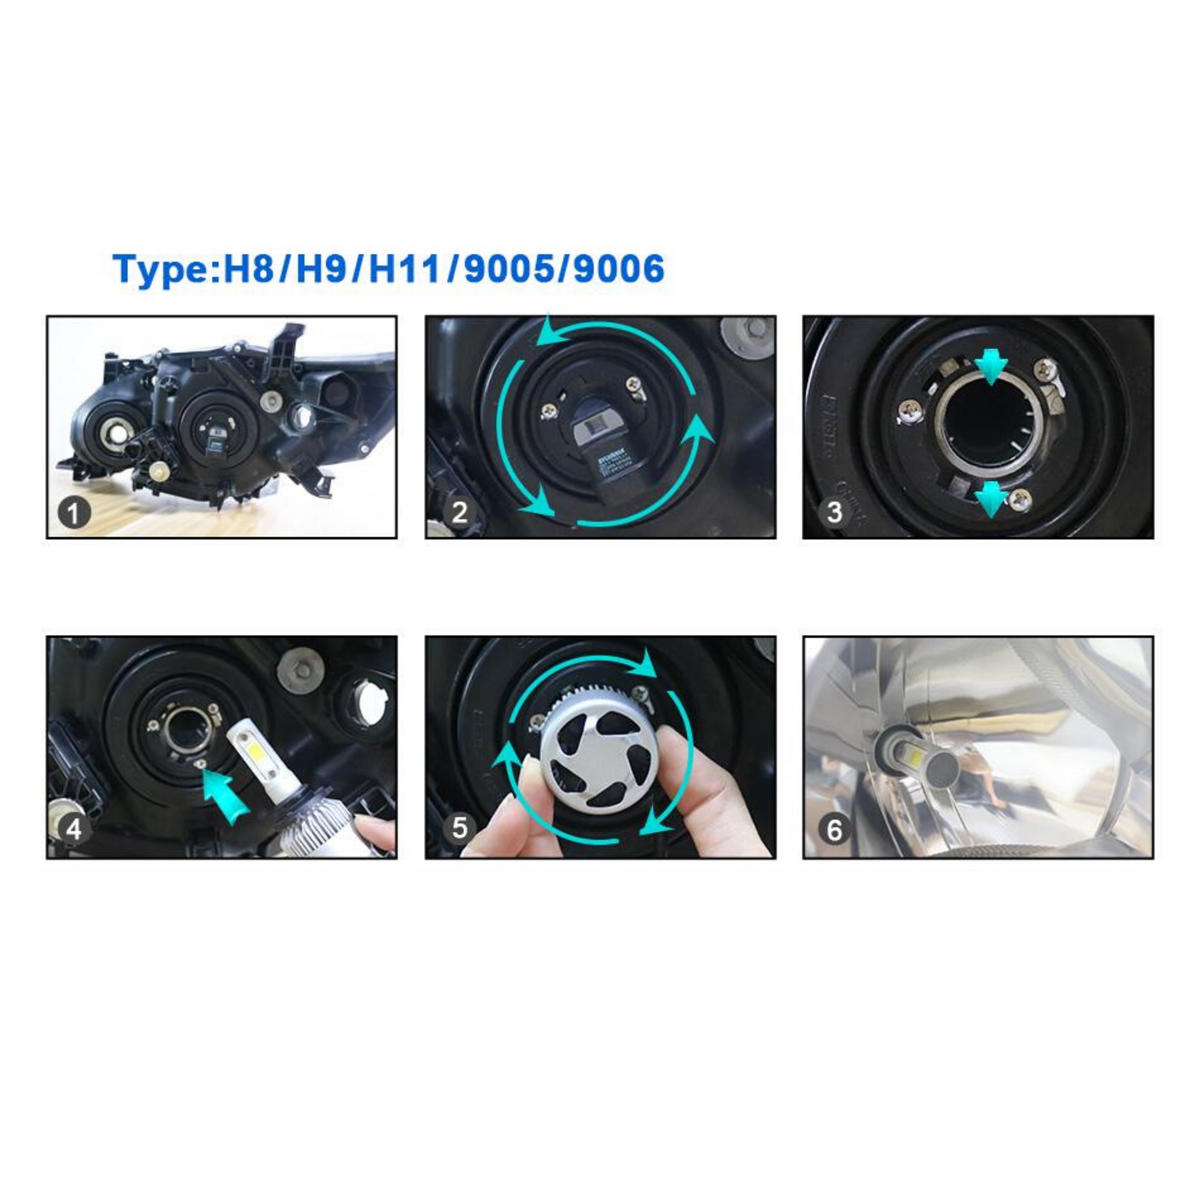 CAR WORK BOX Ampoule H7 LED, 16000LM 80W Phares pour 12V Voiture, 6500K  Xénon Blanc : : Auto et Moto